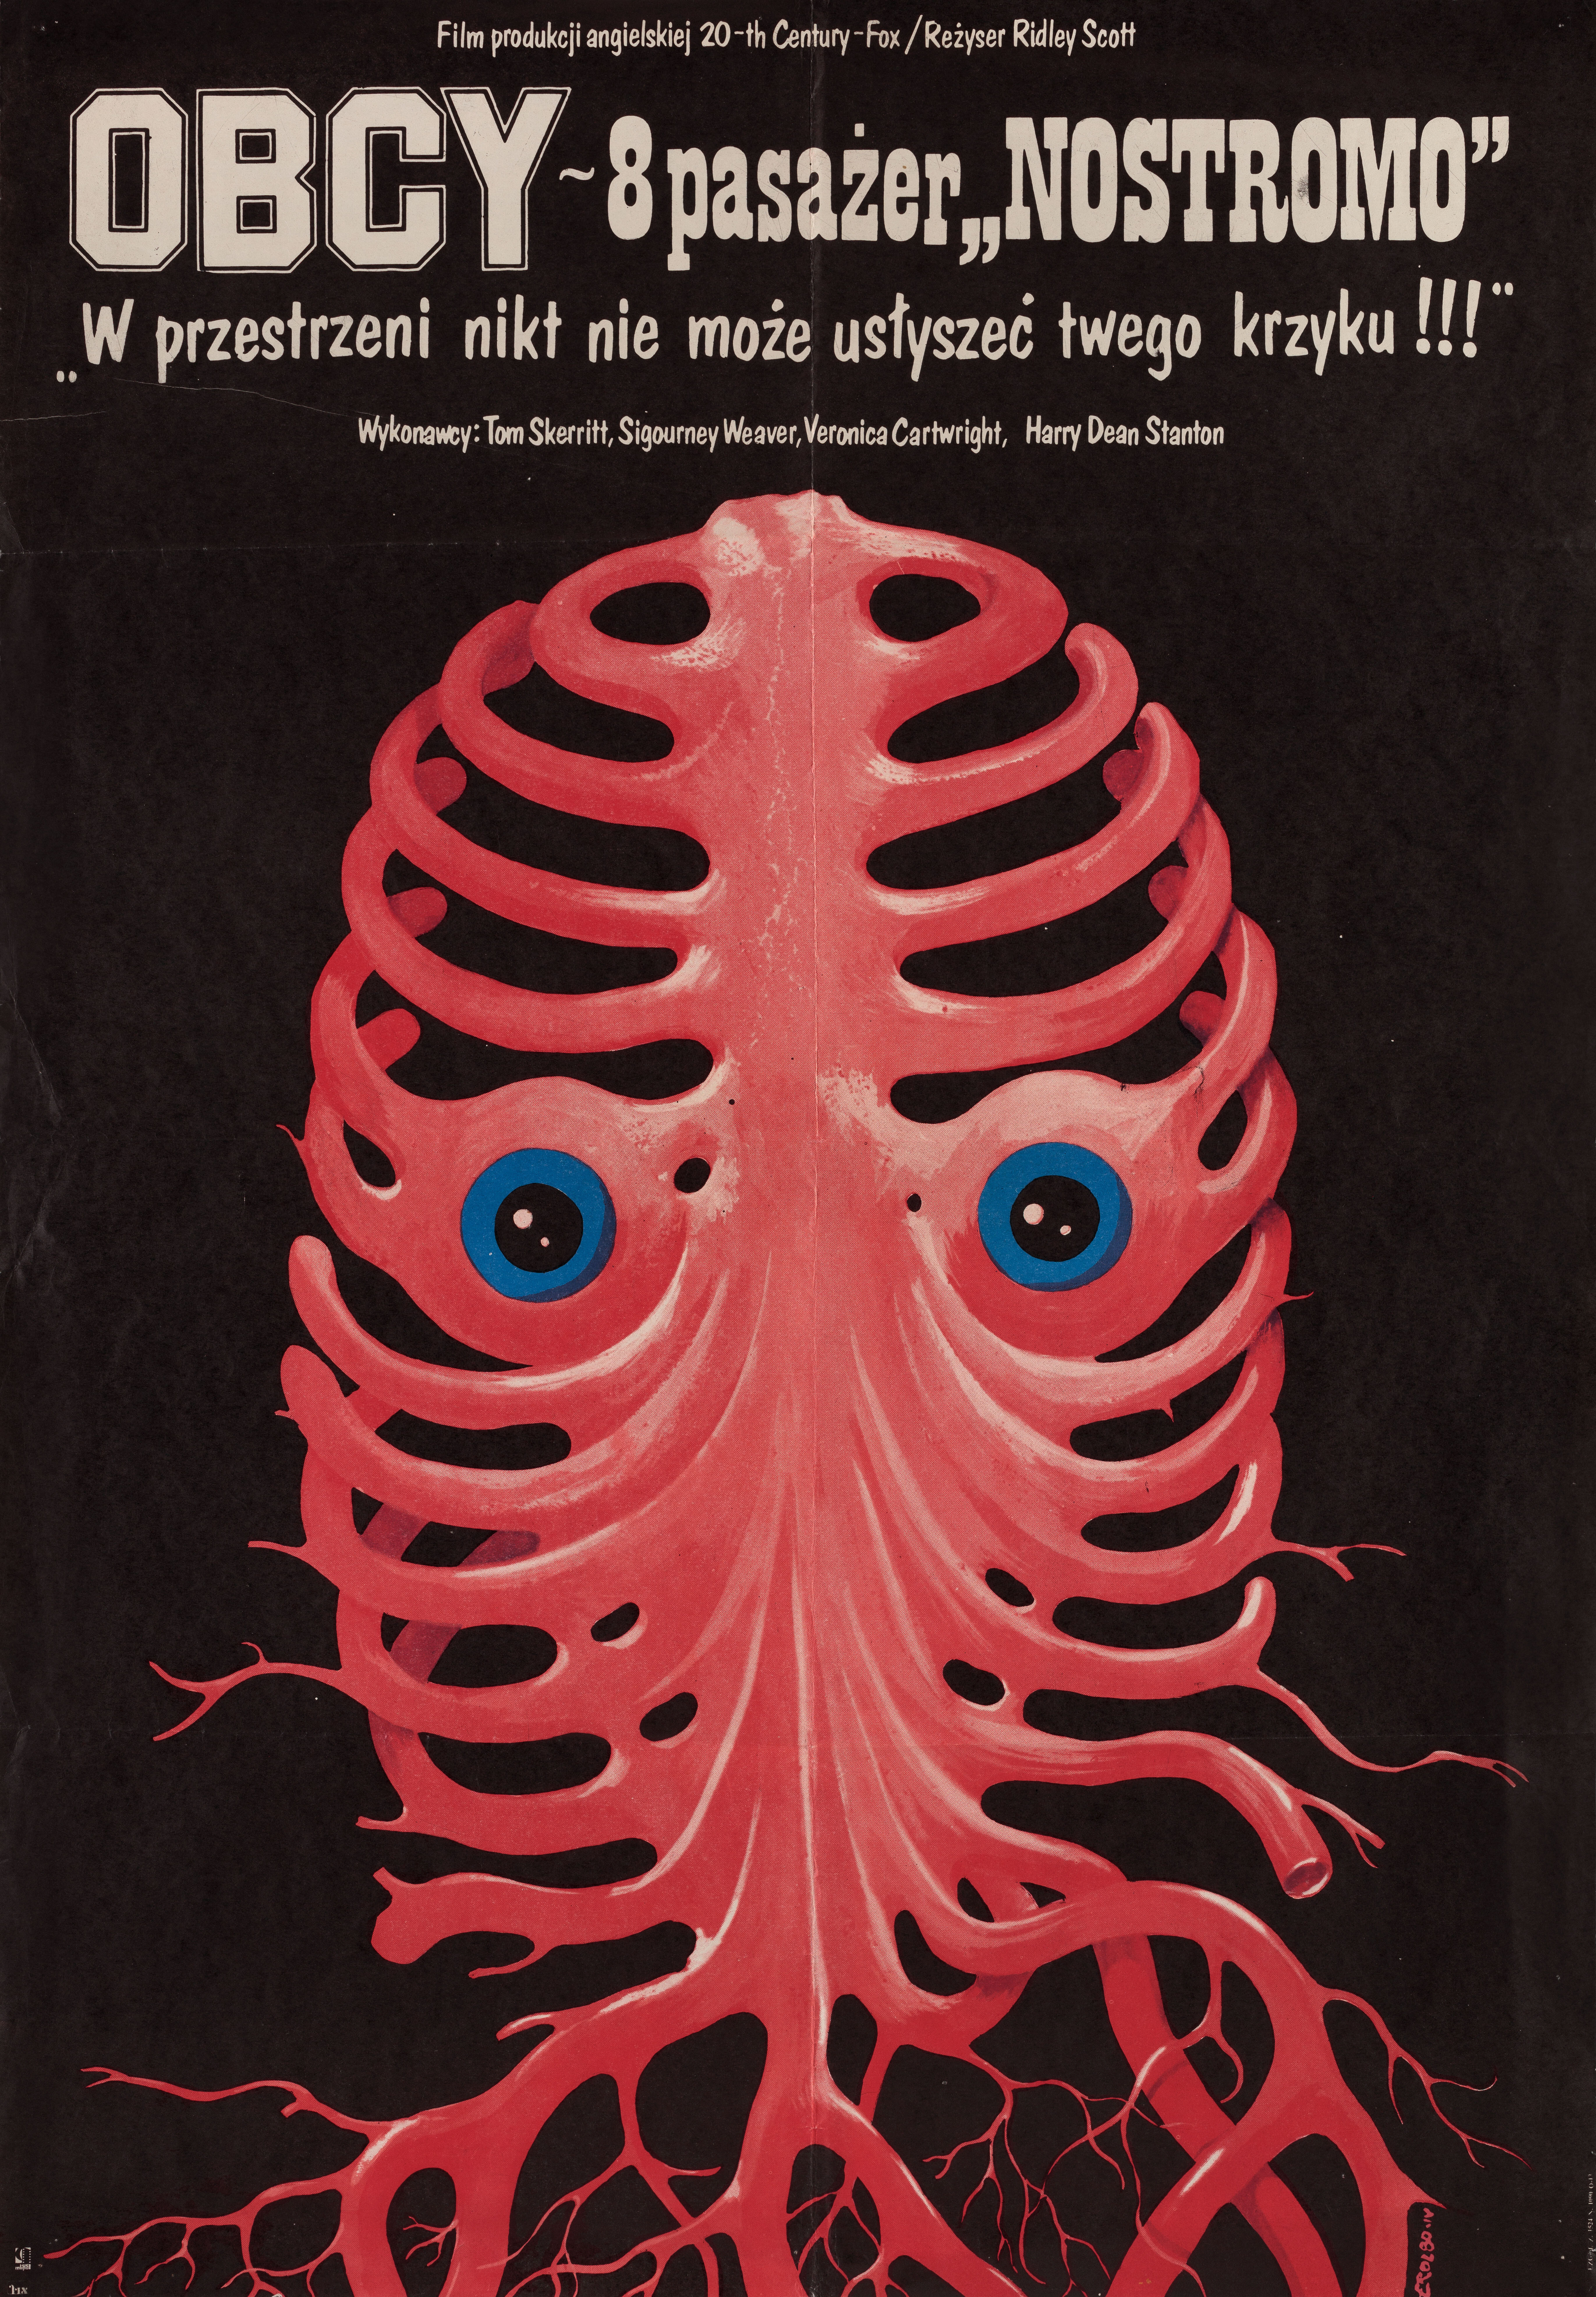 Чужой (Alien, 1979), режиссёр Ридли Скотт, польский плакат к фильму, 1980 год, автор Якуб Эрол